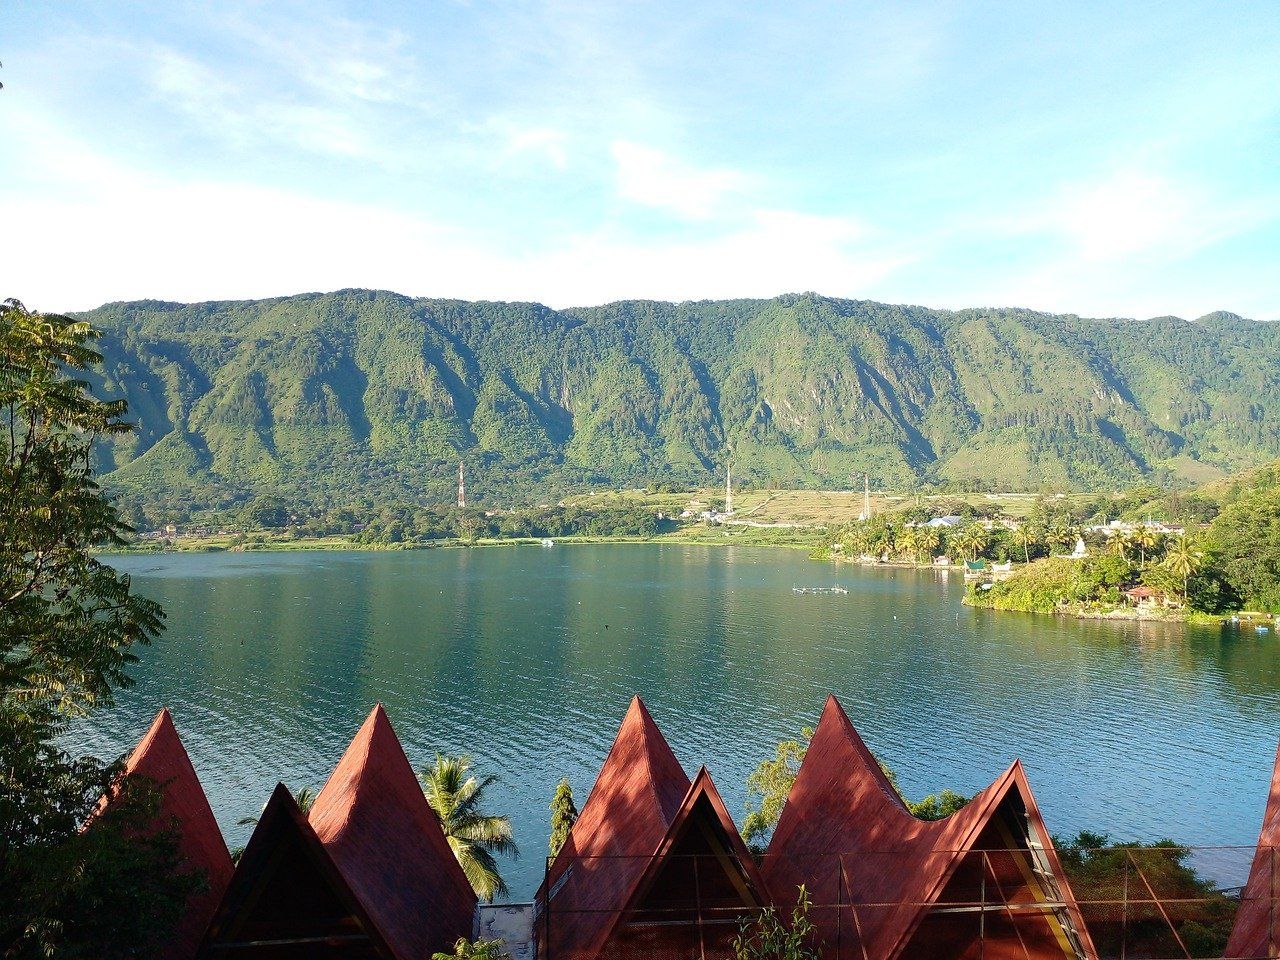 Danau terbesar di indonesia adalah danau toba yang terletak di provinsi